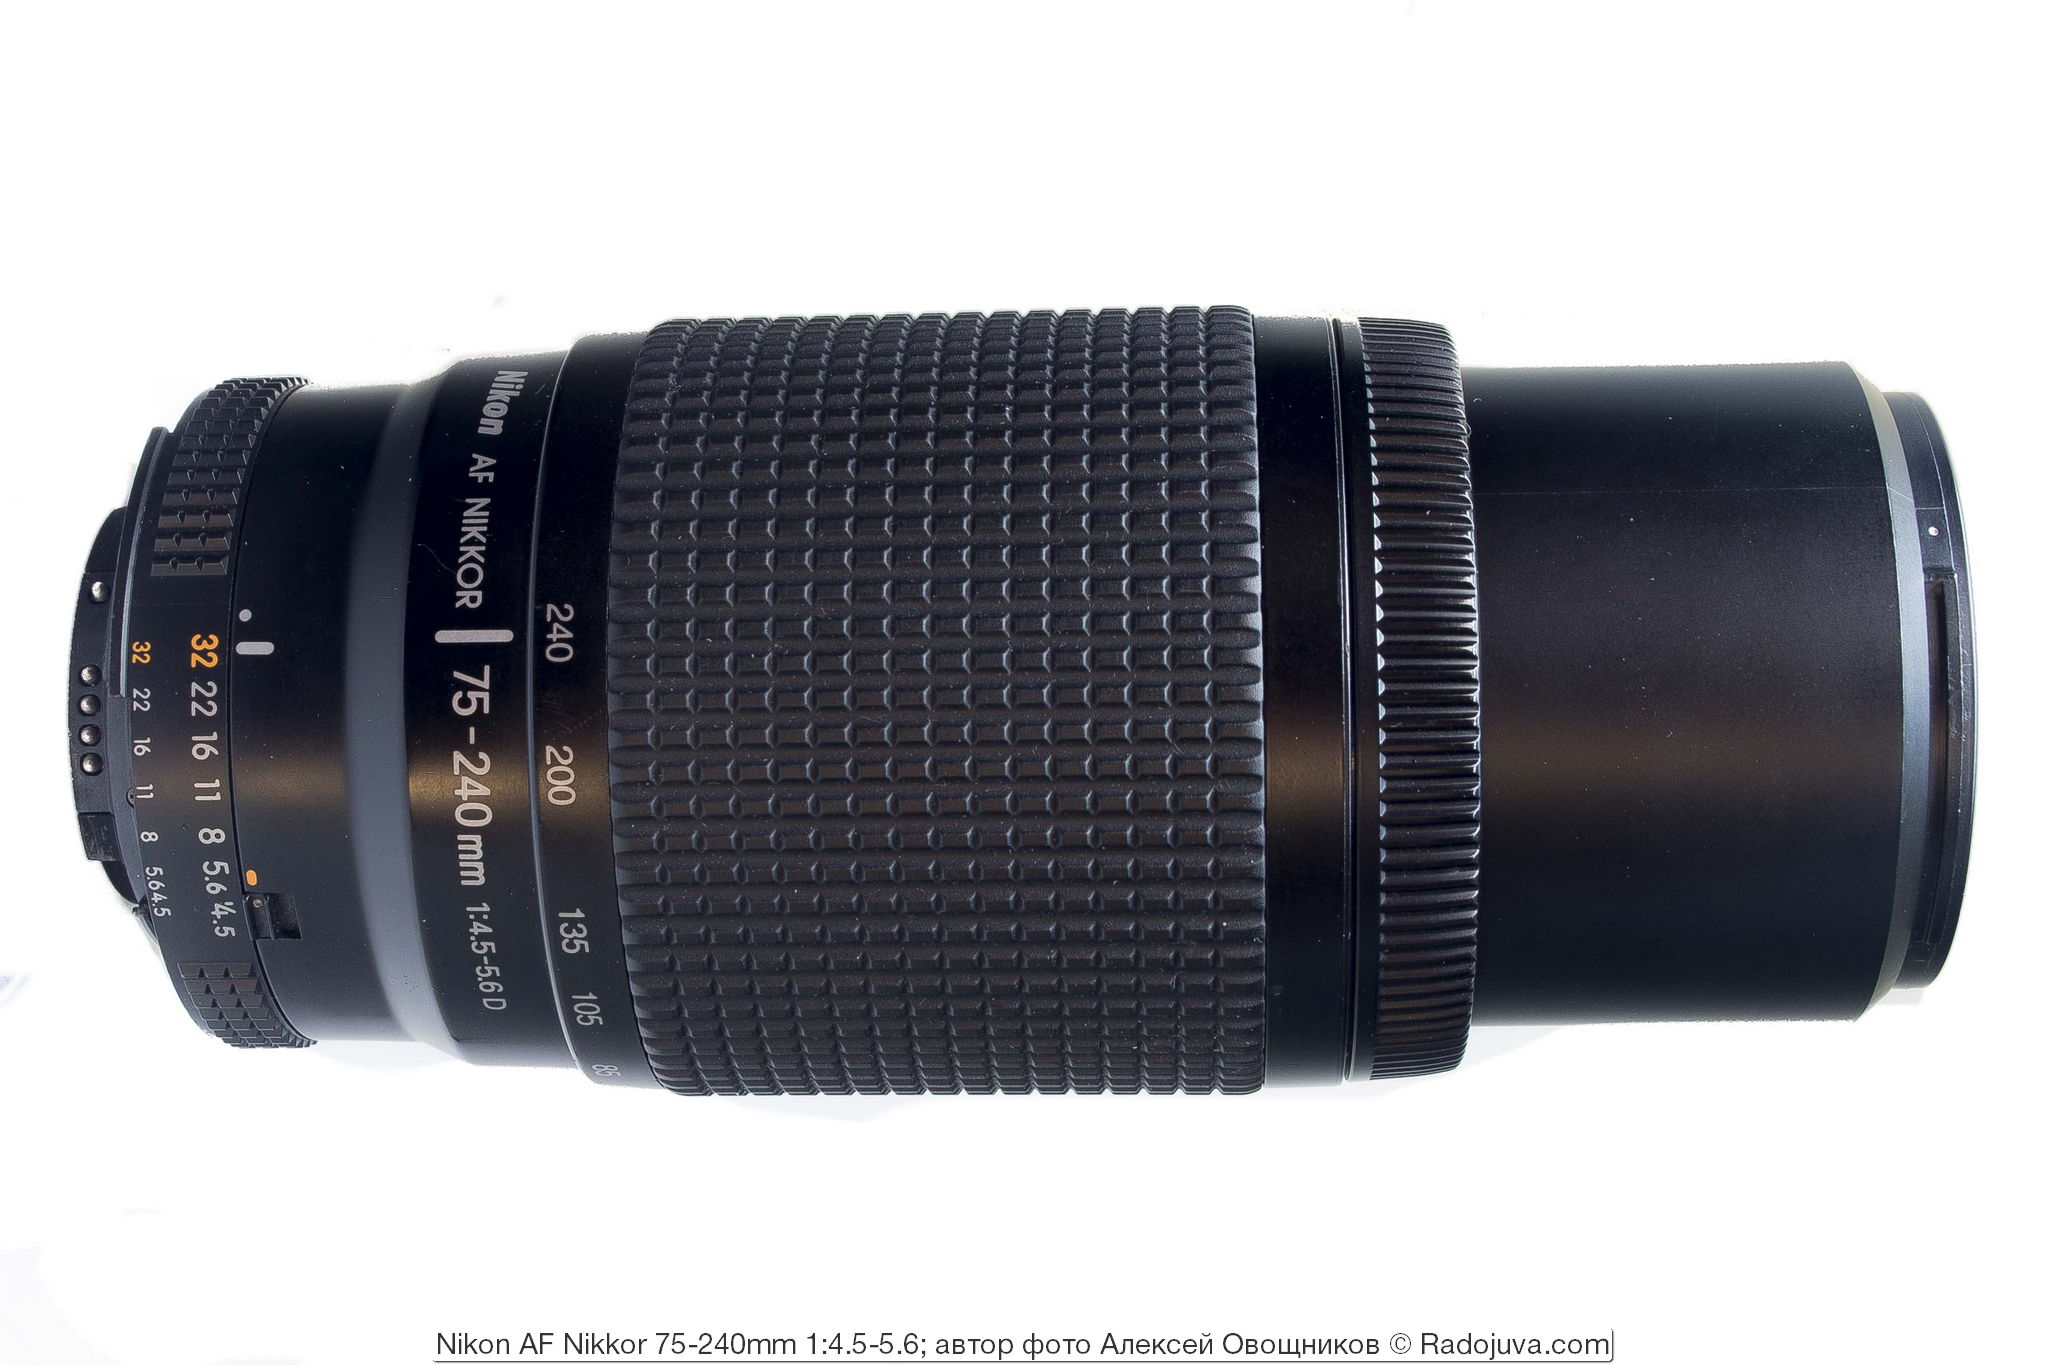 Nikon AF Nikkor 75-240mm 1:4.5-5.6